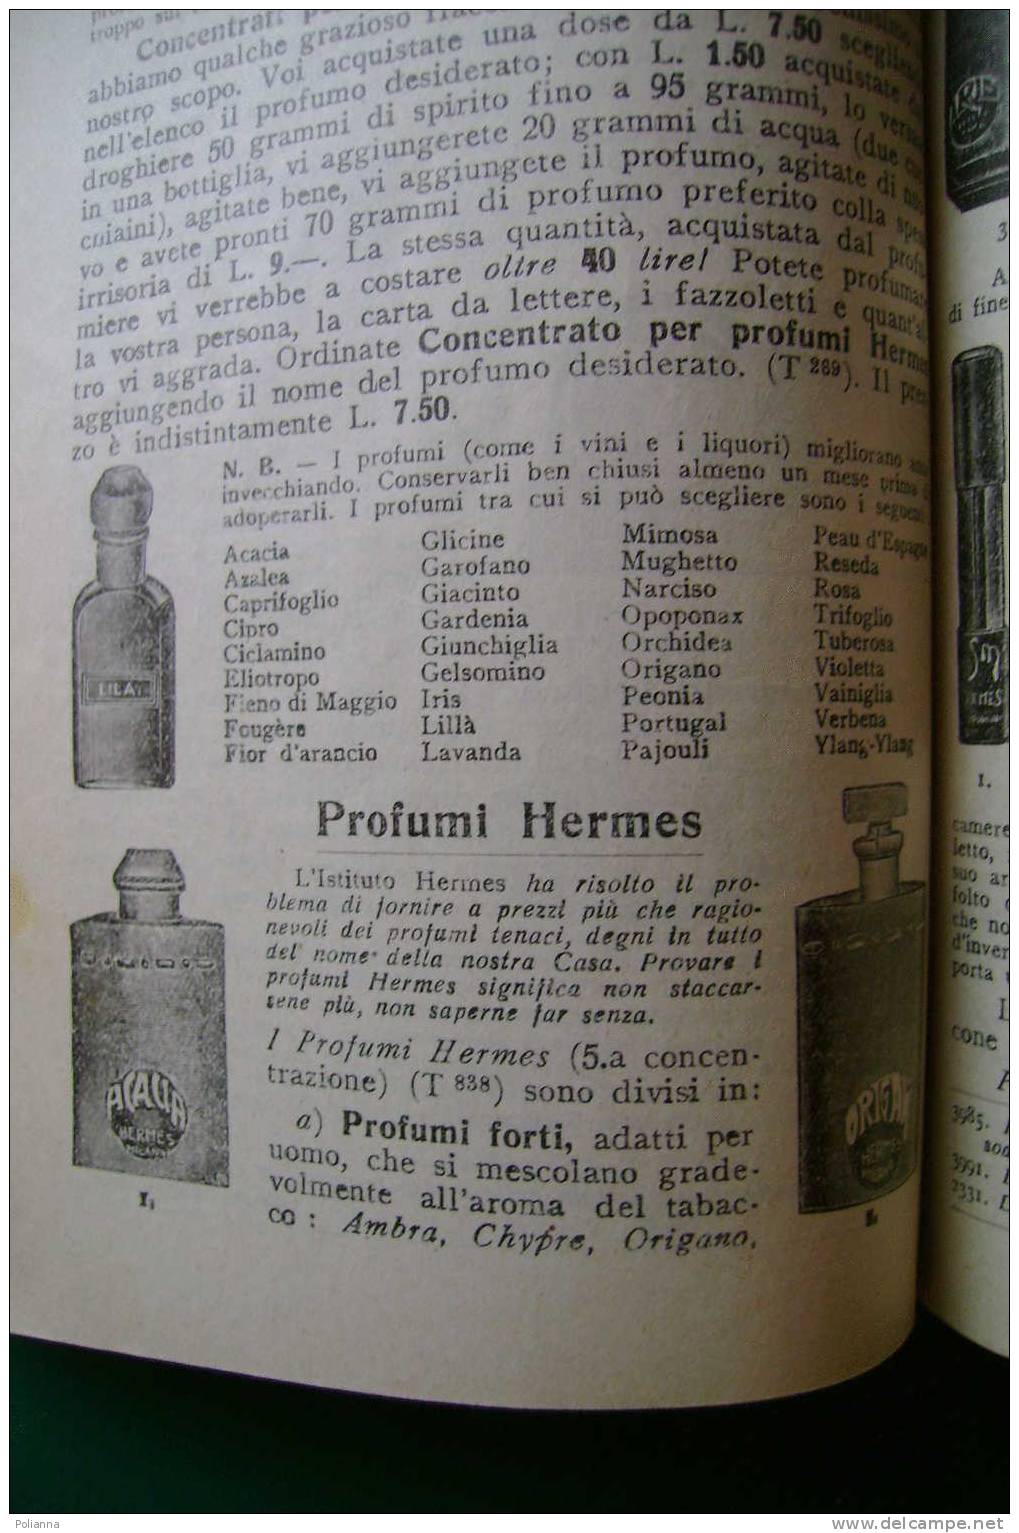 PDR/43 Istituto Hermes - SEGRETI BELLEZZA 1931/PROFUMI/PORTA CIPRIA/ACCONCIATURE